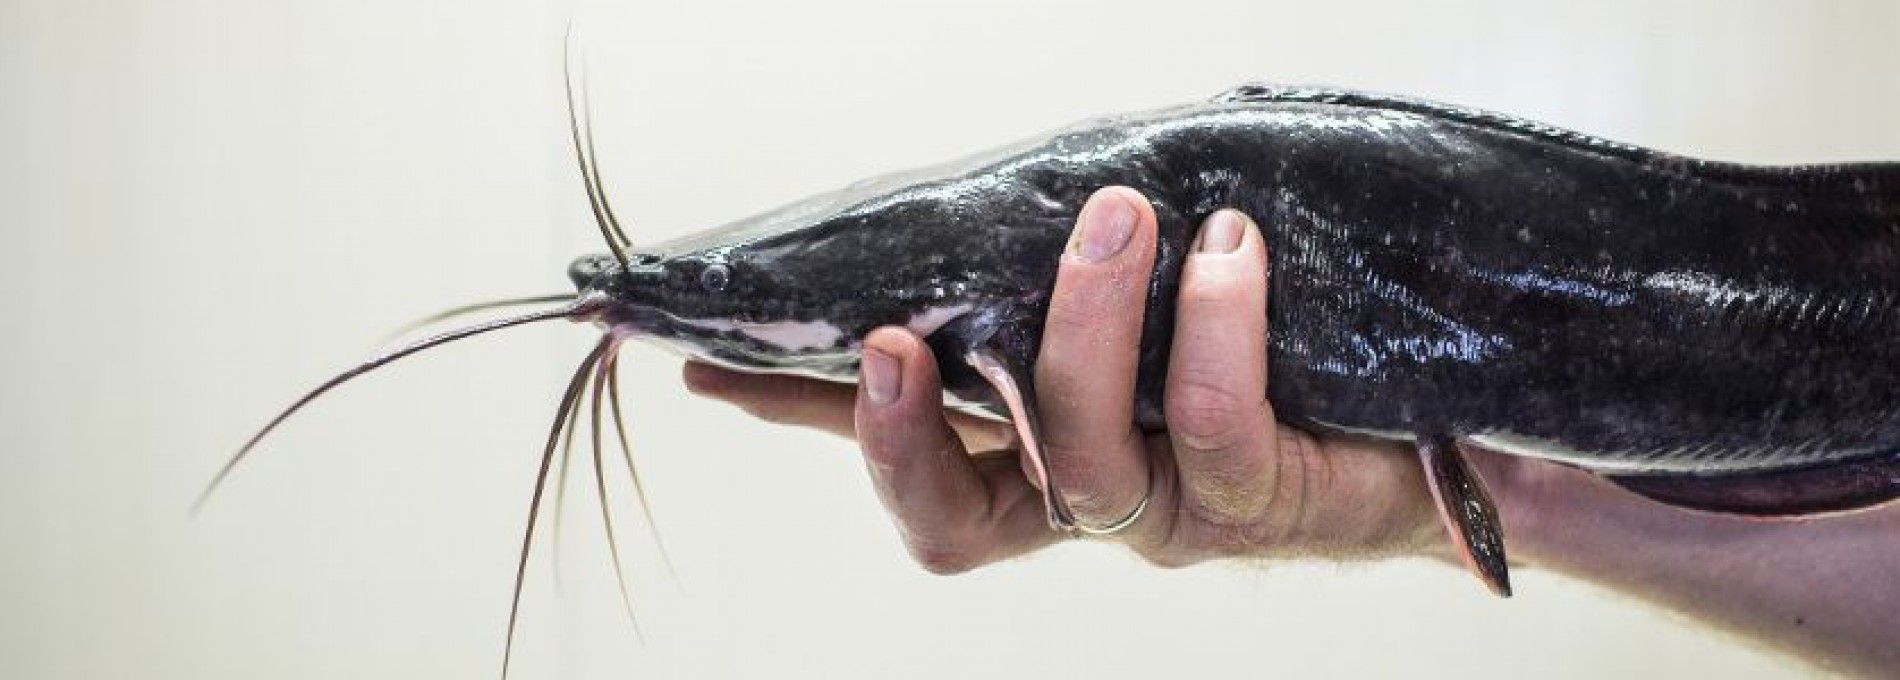 Ameland Catfish